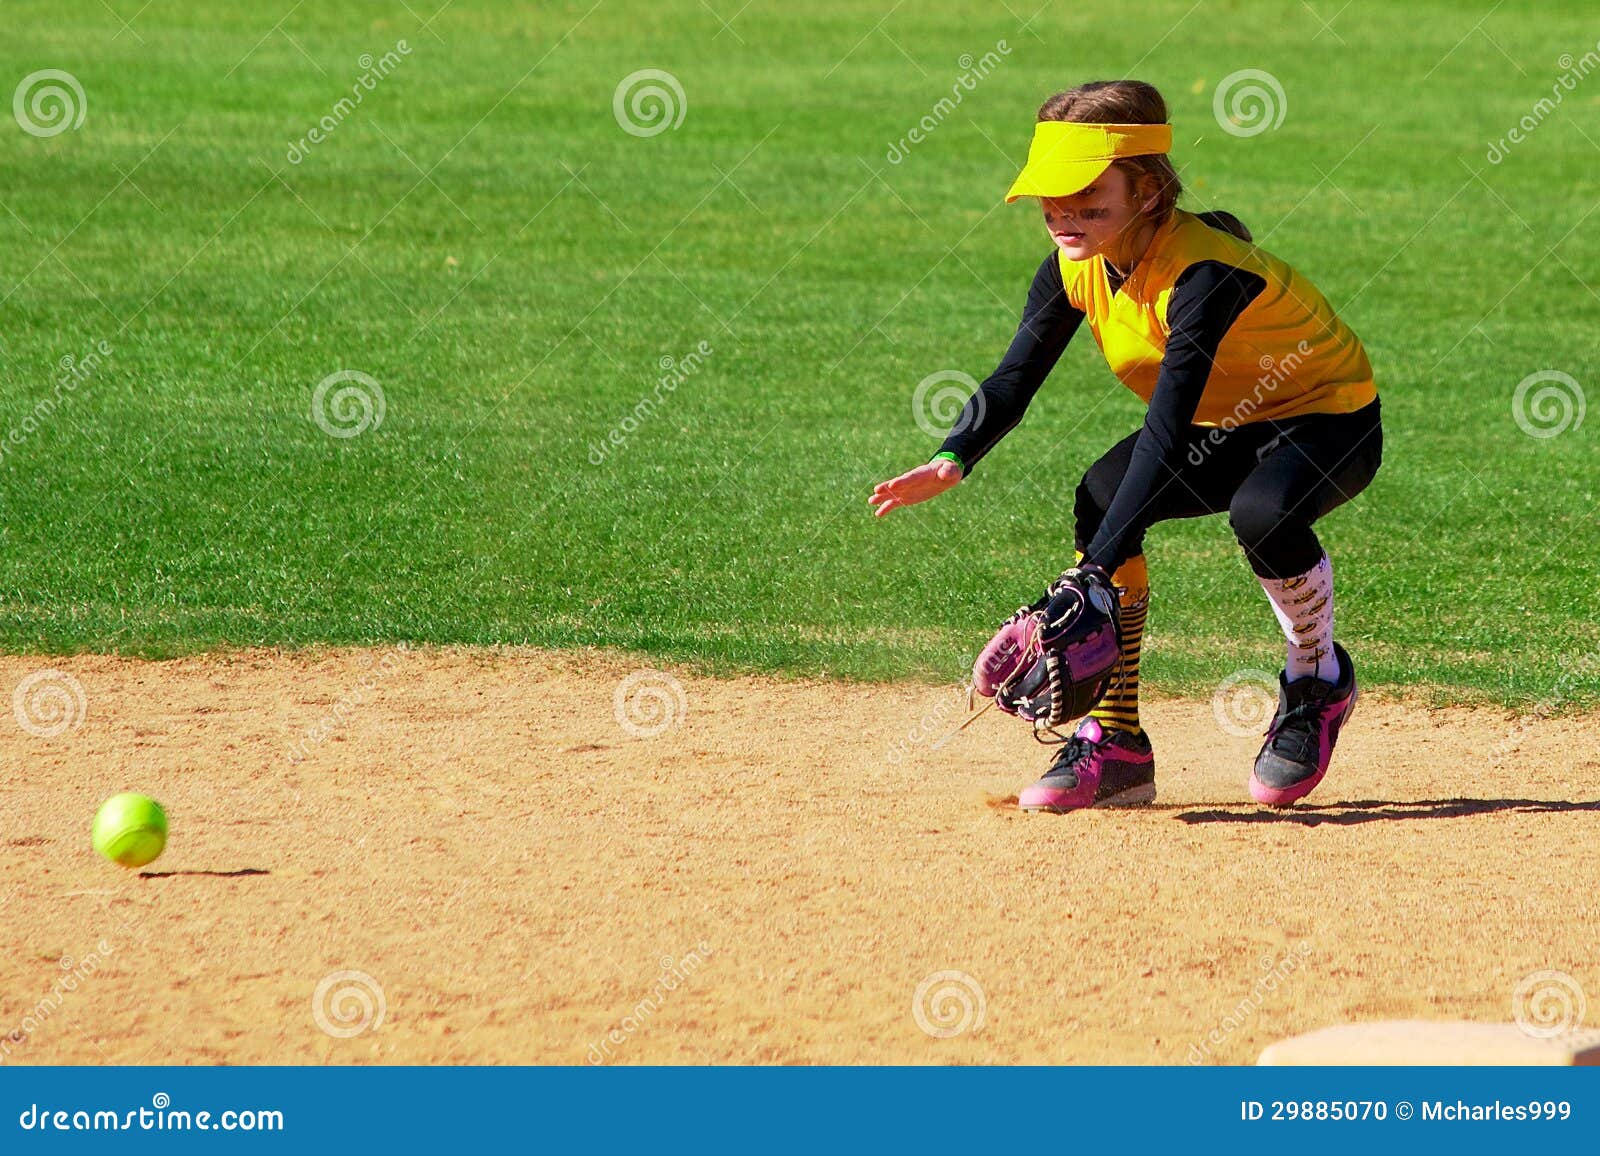 softball player fielding a ground ball